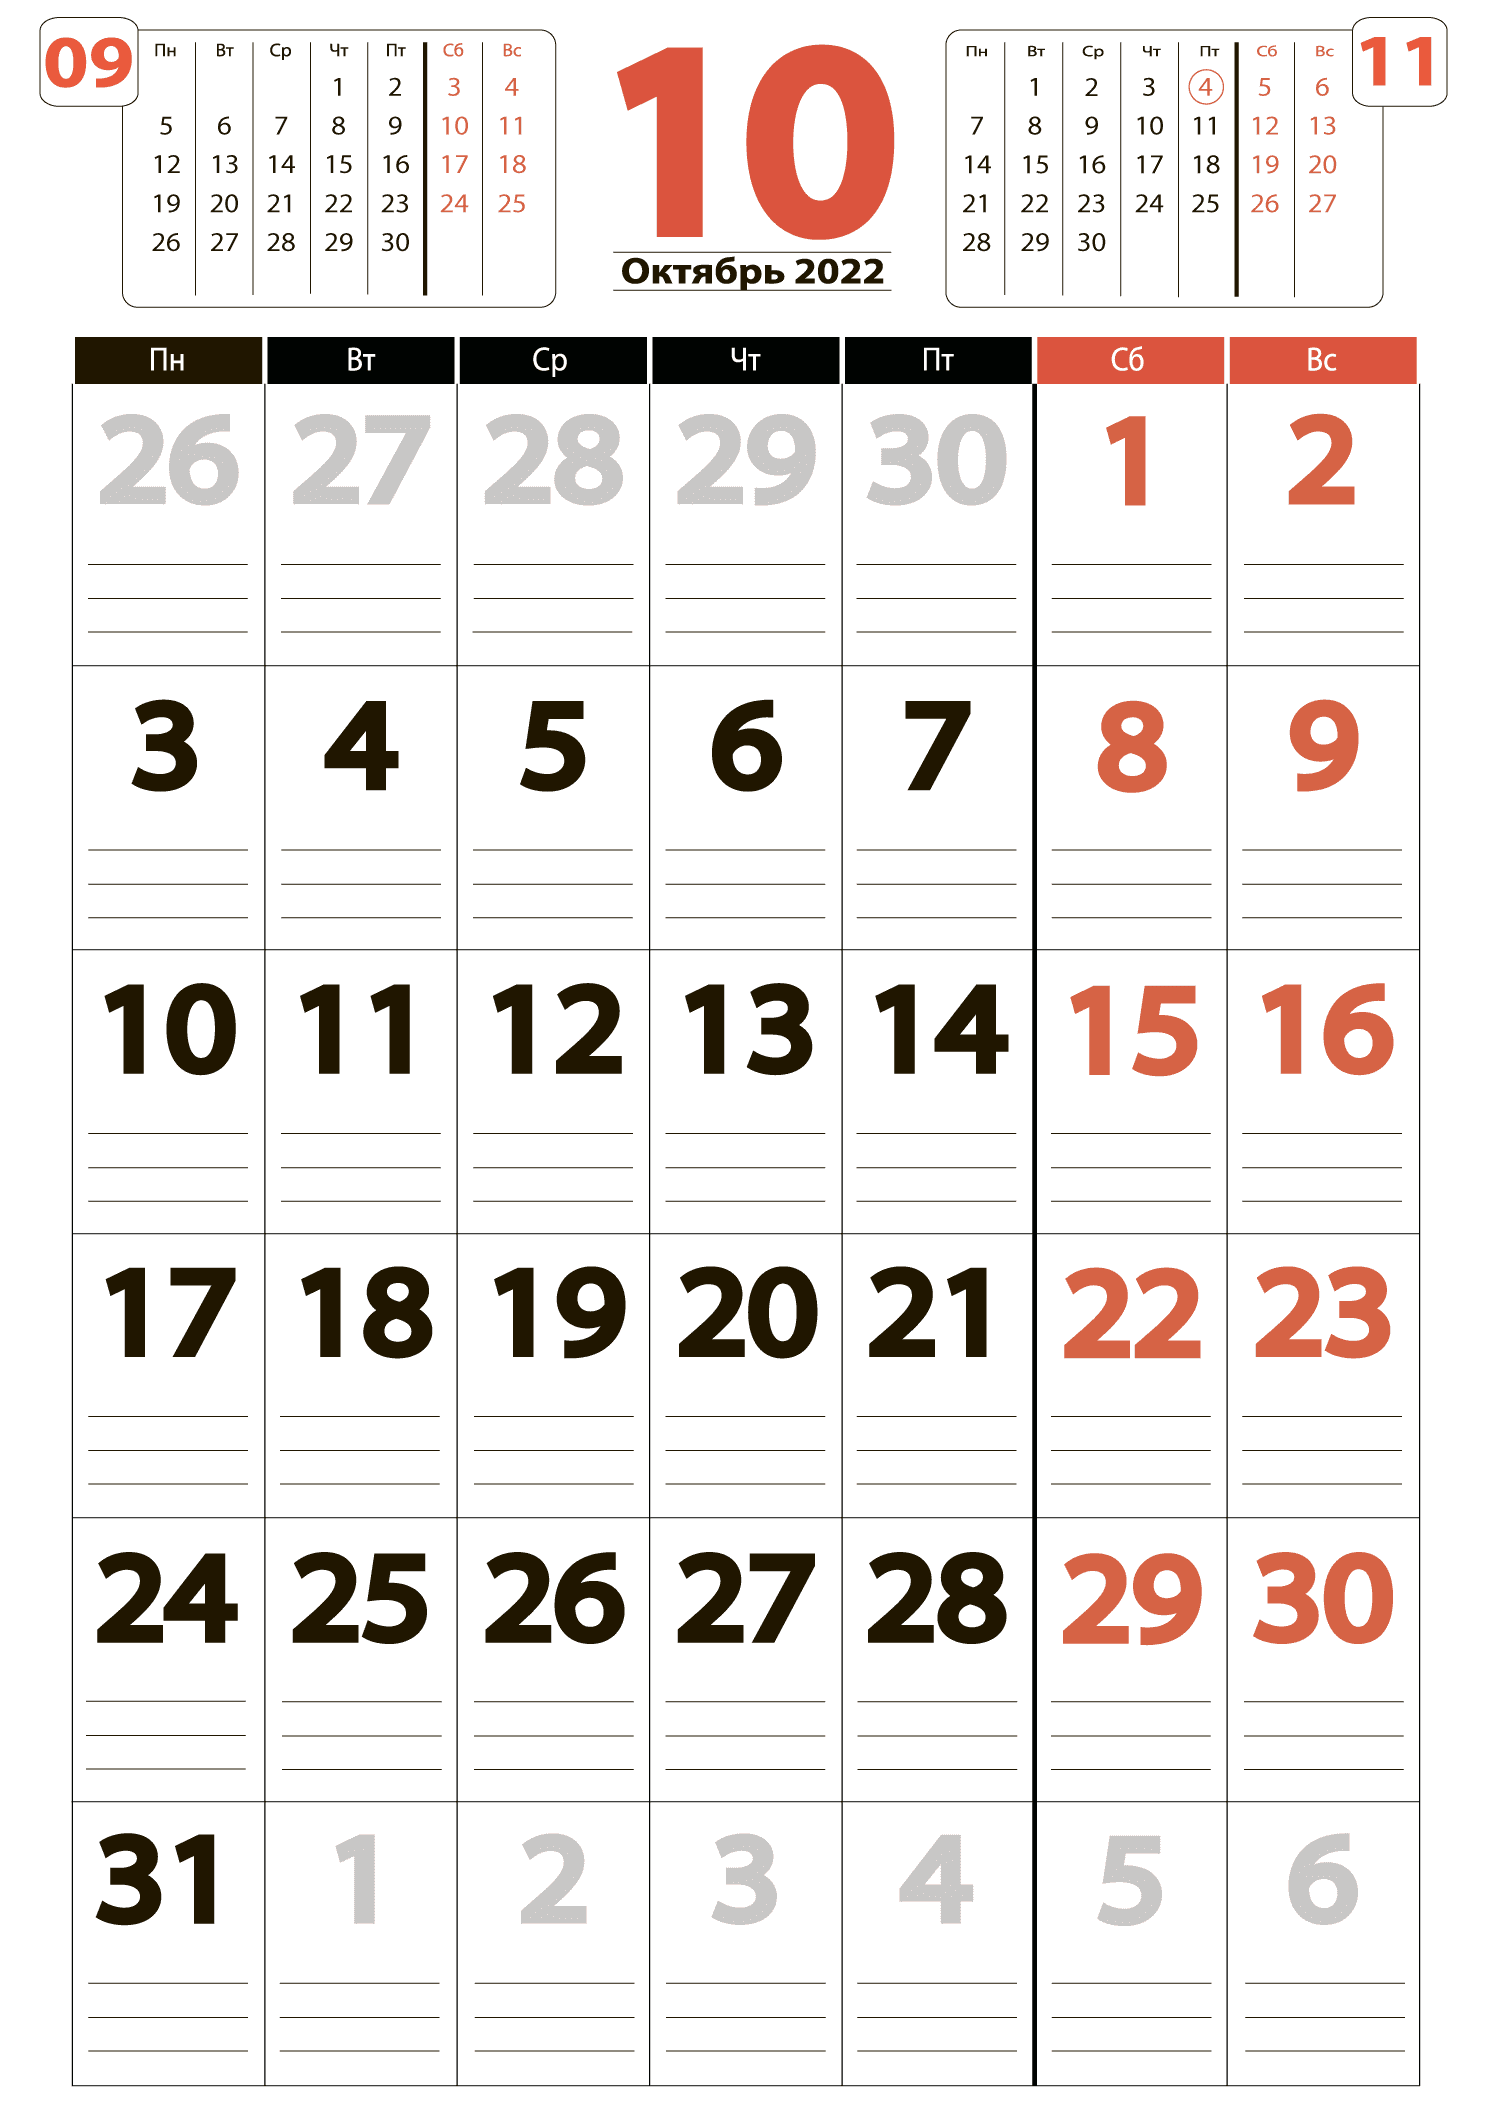 Печать крупного календаря на октябрь 2022